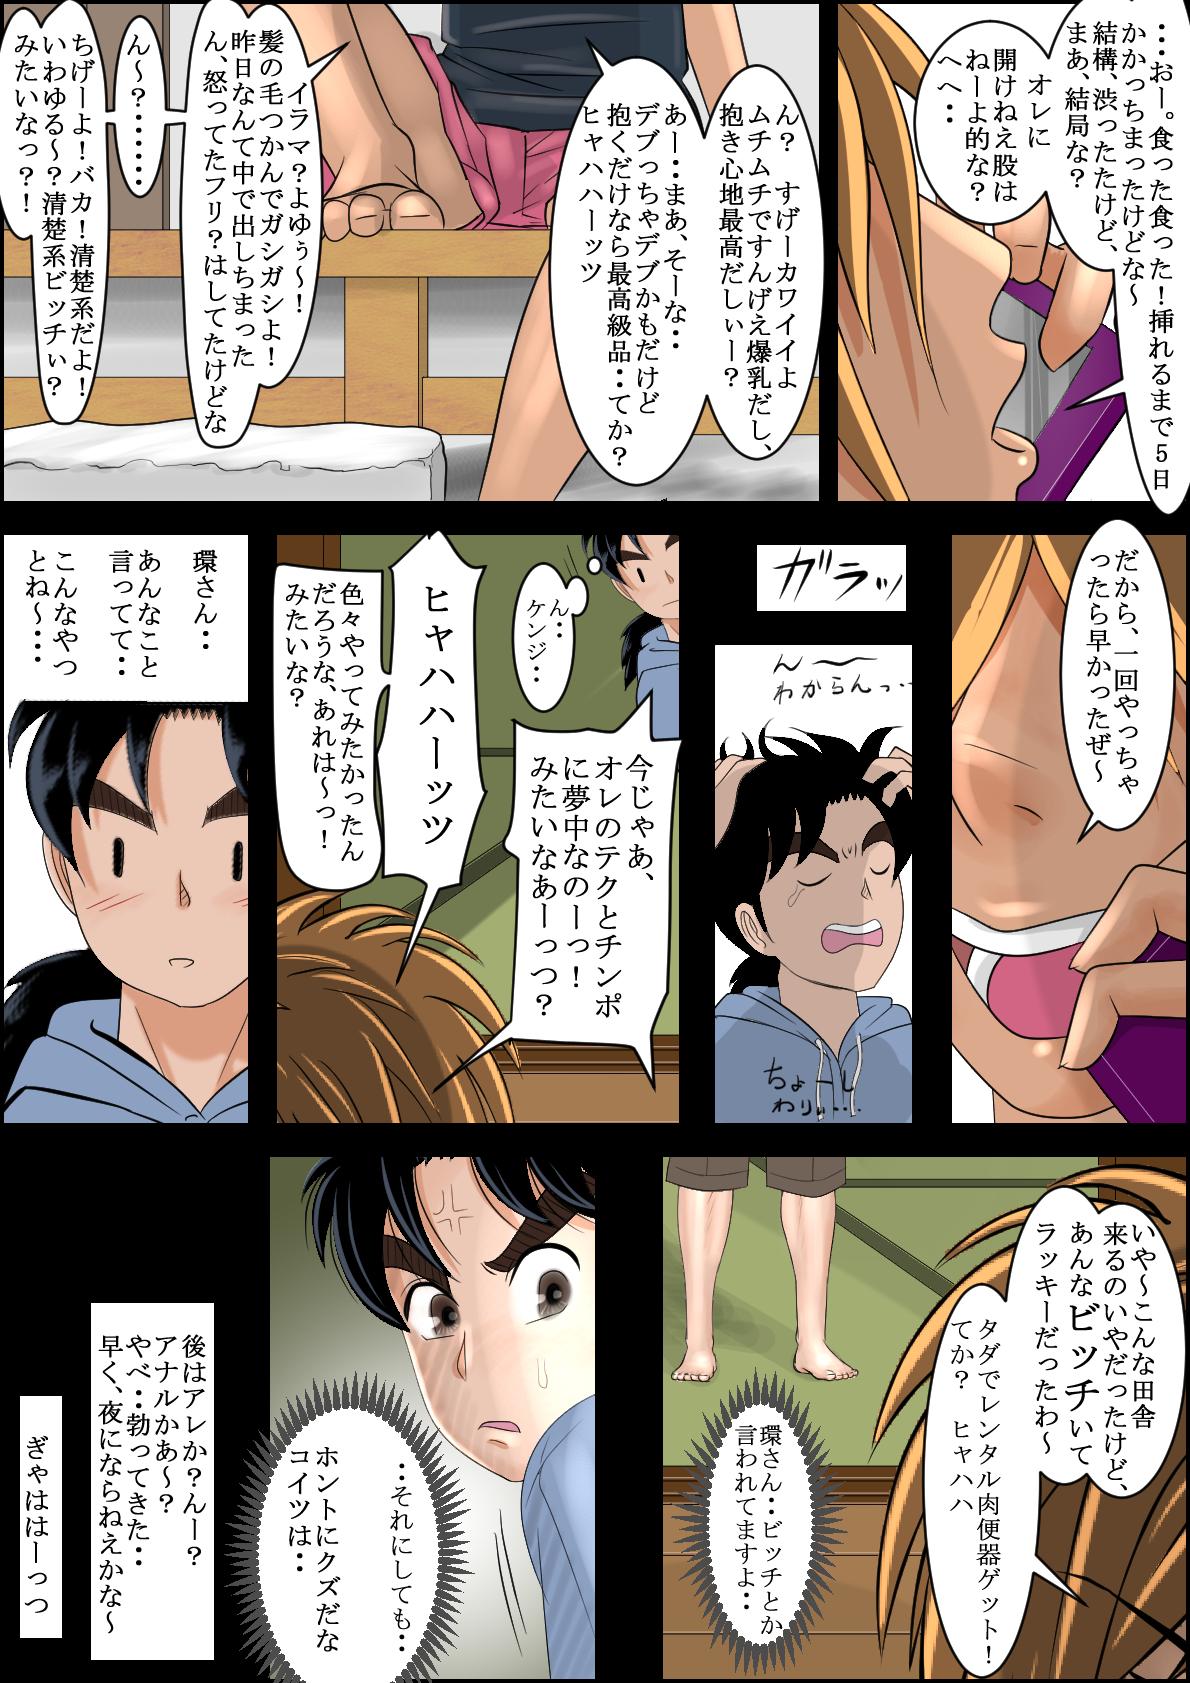 Mulata Seisokei Bitch no Jikenbo - Kindaichi shounen no jikenbo Leche - Page 8